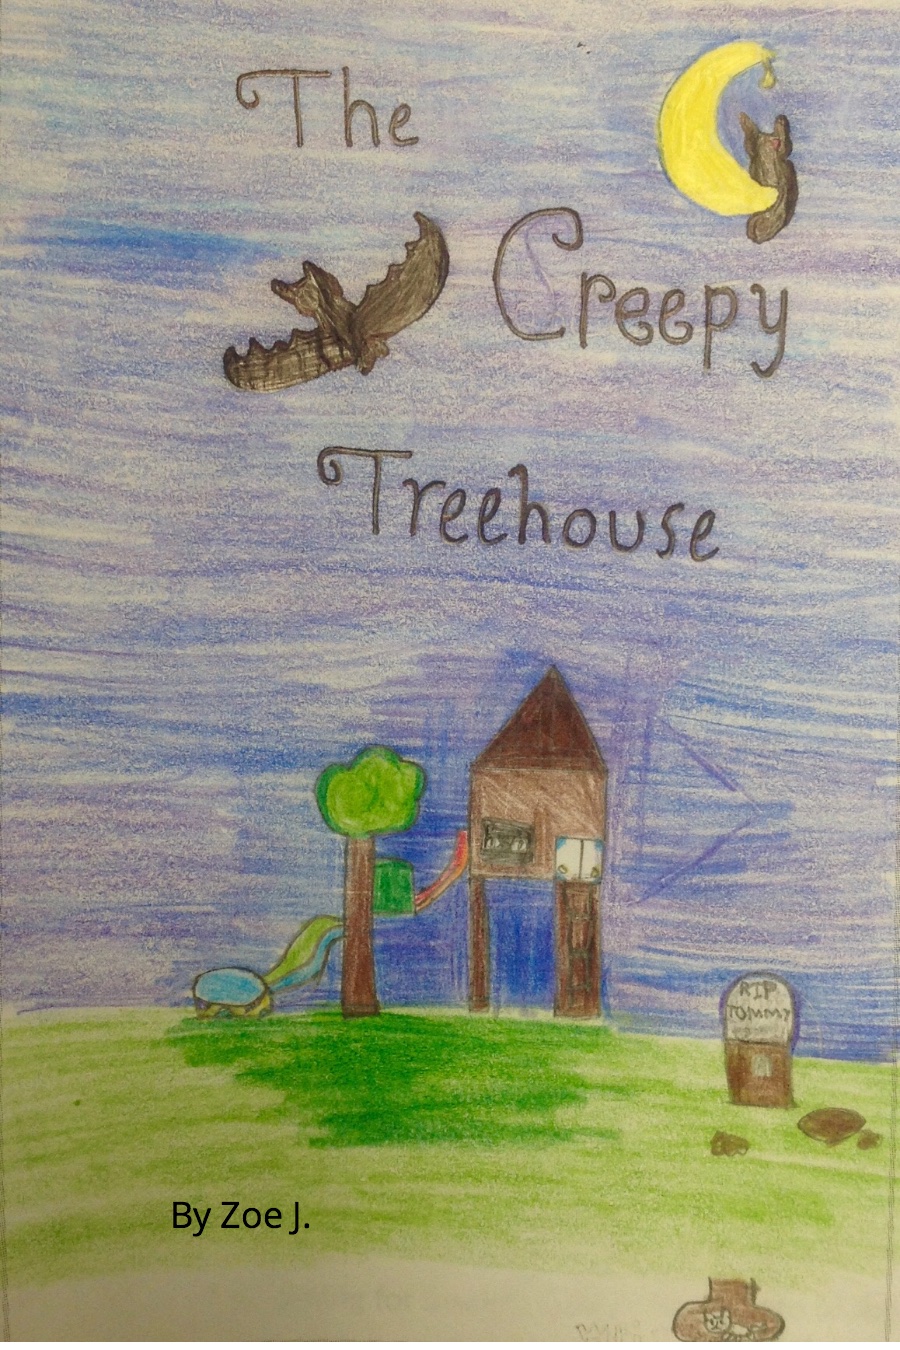 The Creepy Treehouse By Zoe J